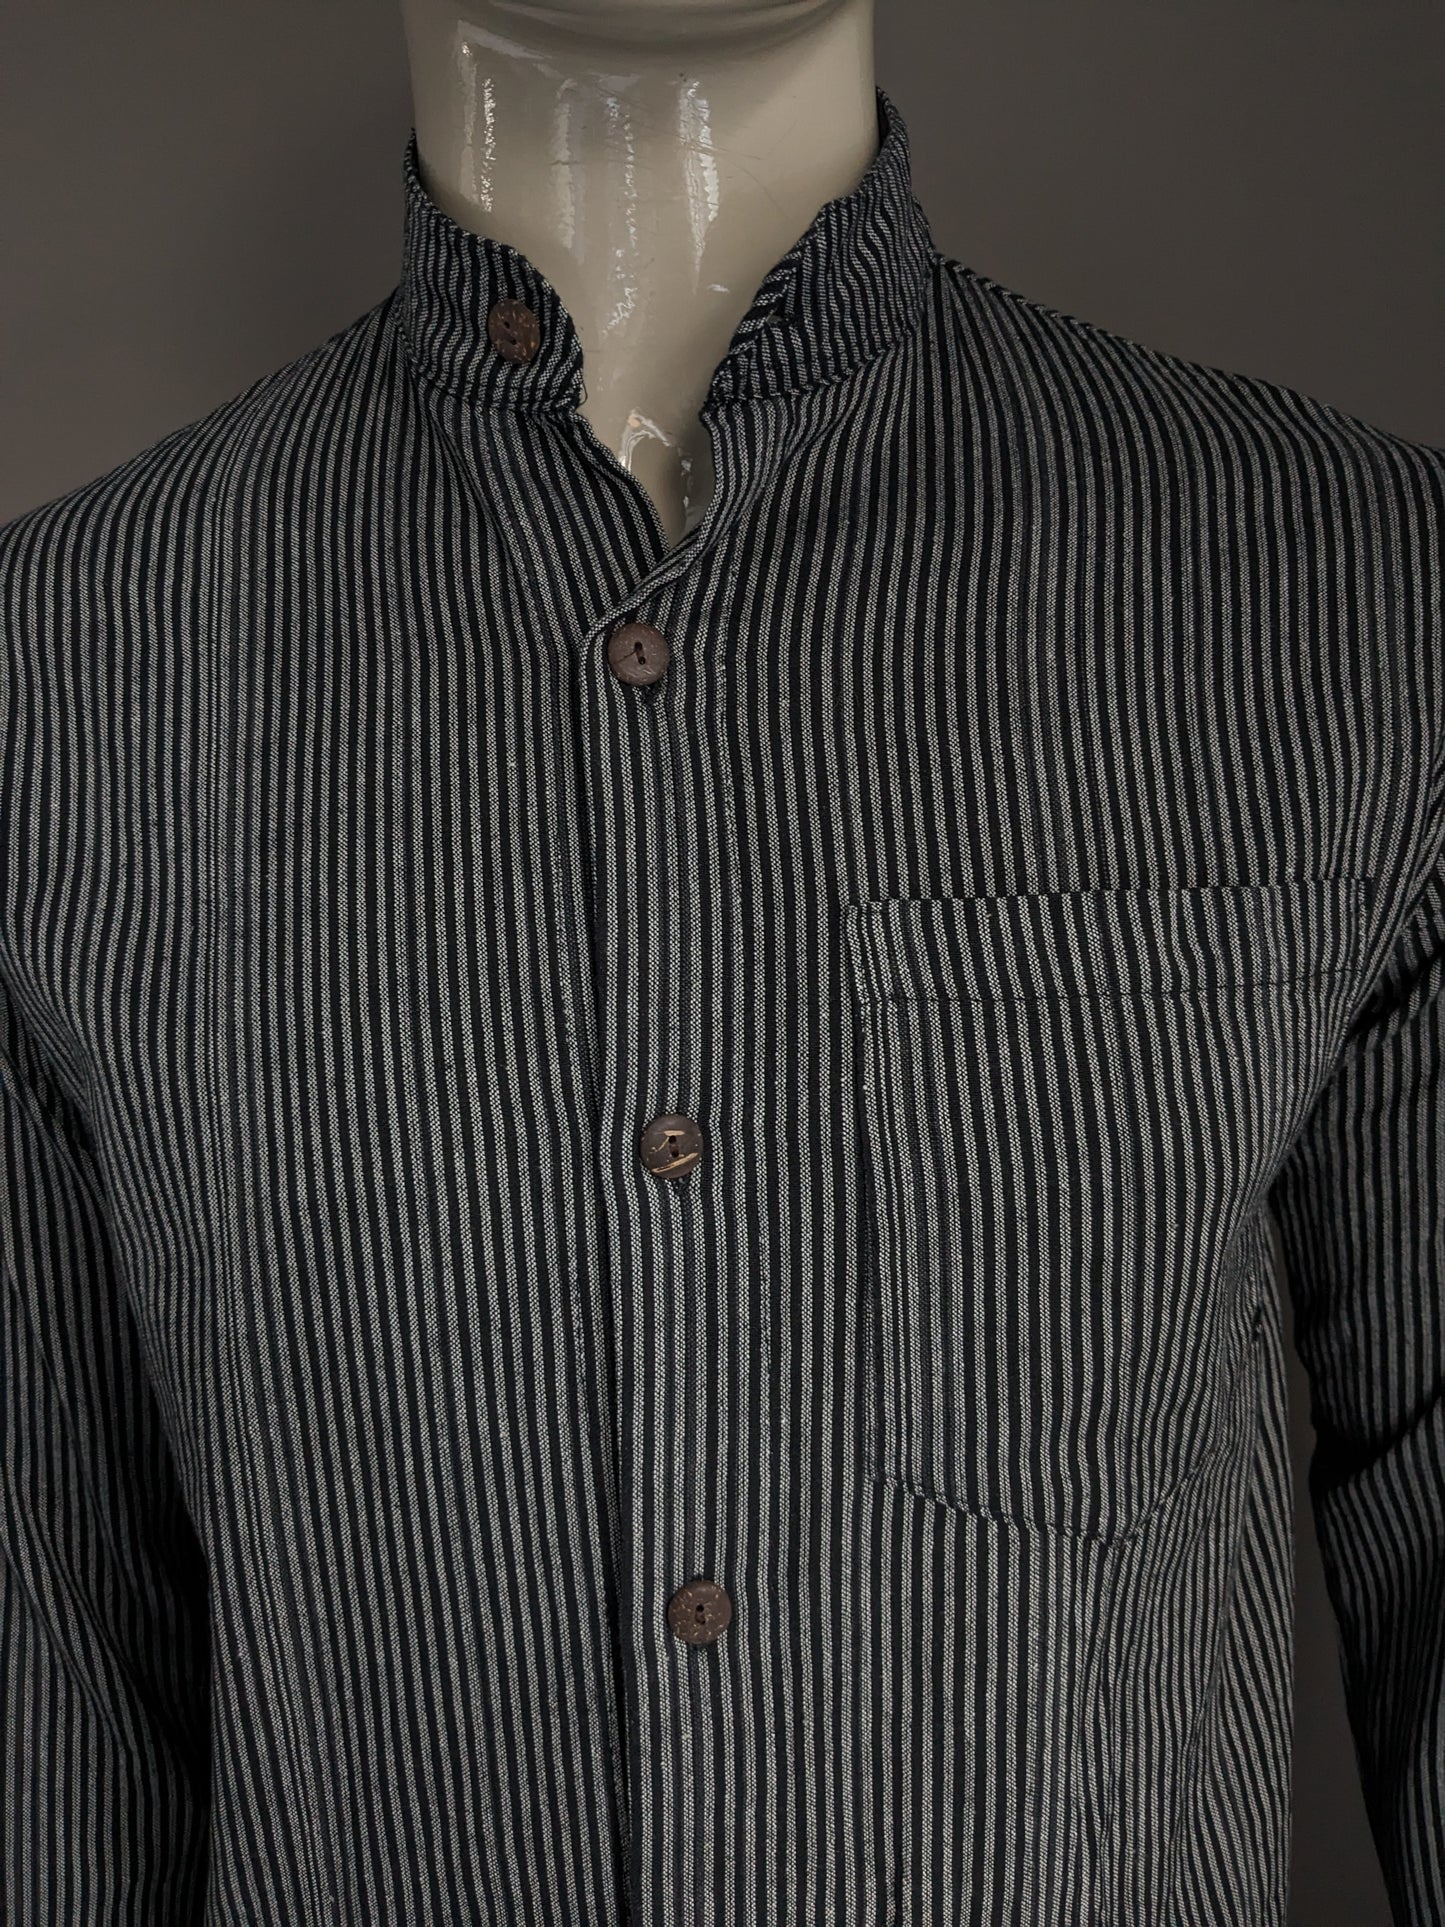 Vintage overhemd opstaande / farmers / Mao kraag. Zwart grijs gestreept. Maat M.